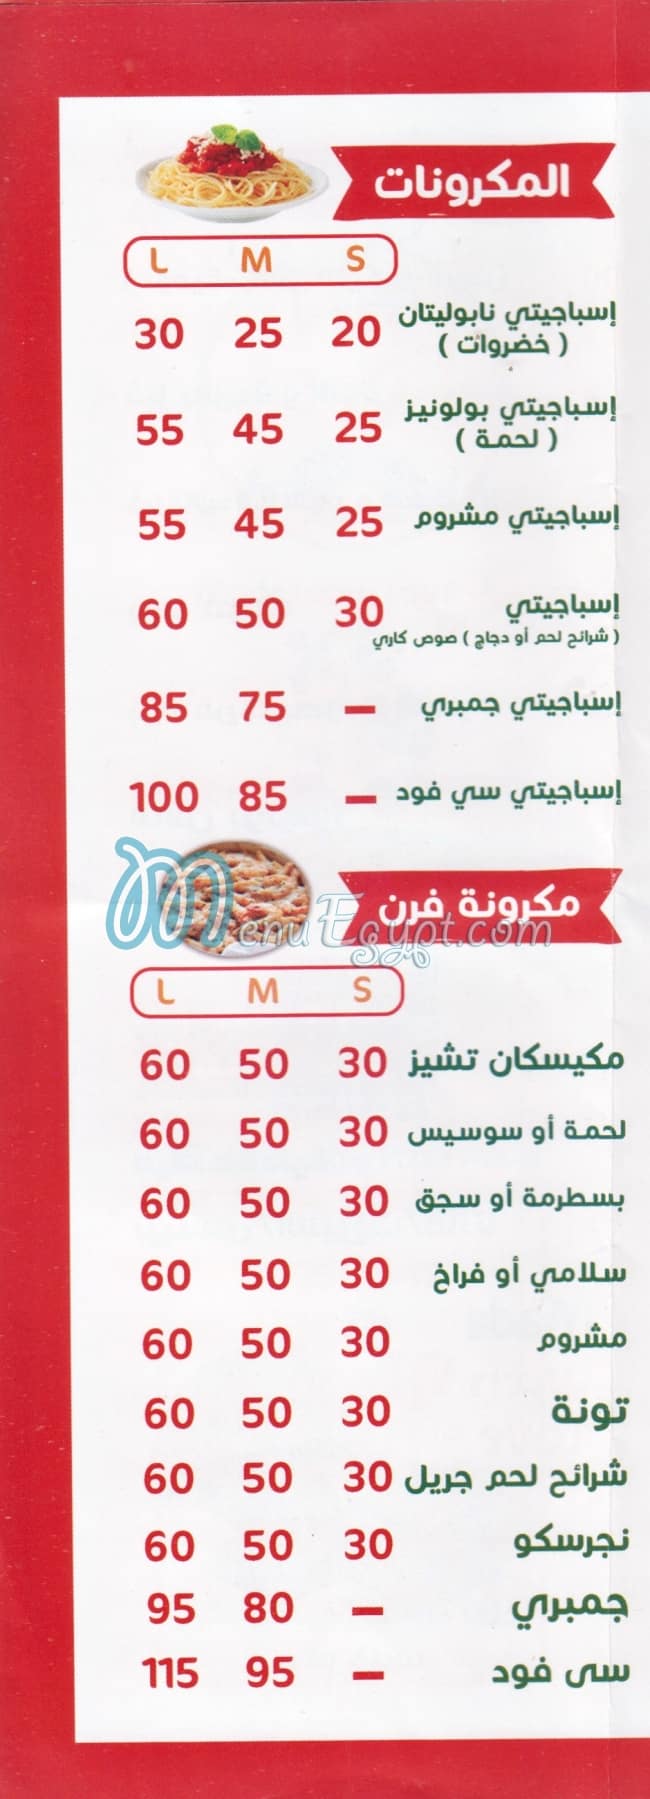 M.H menu